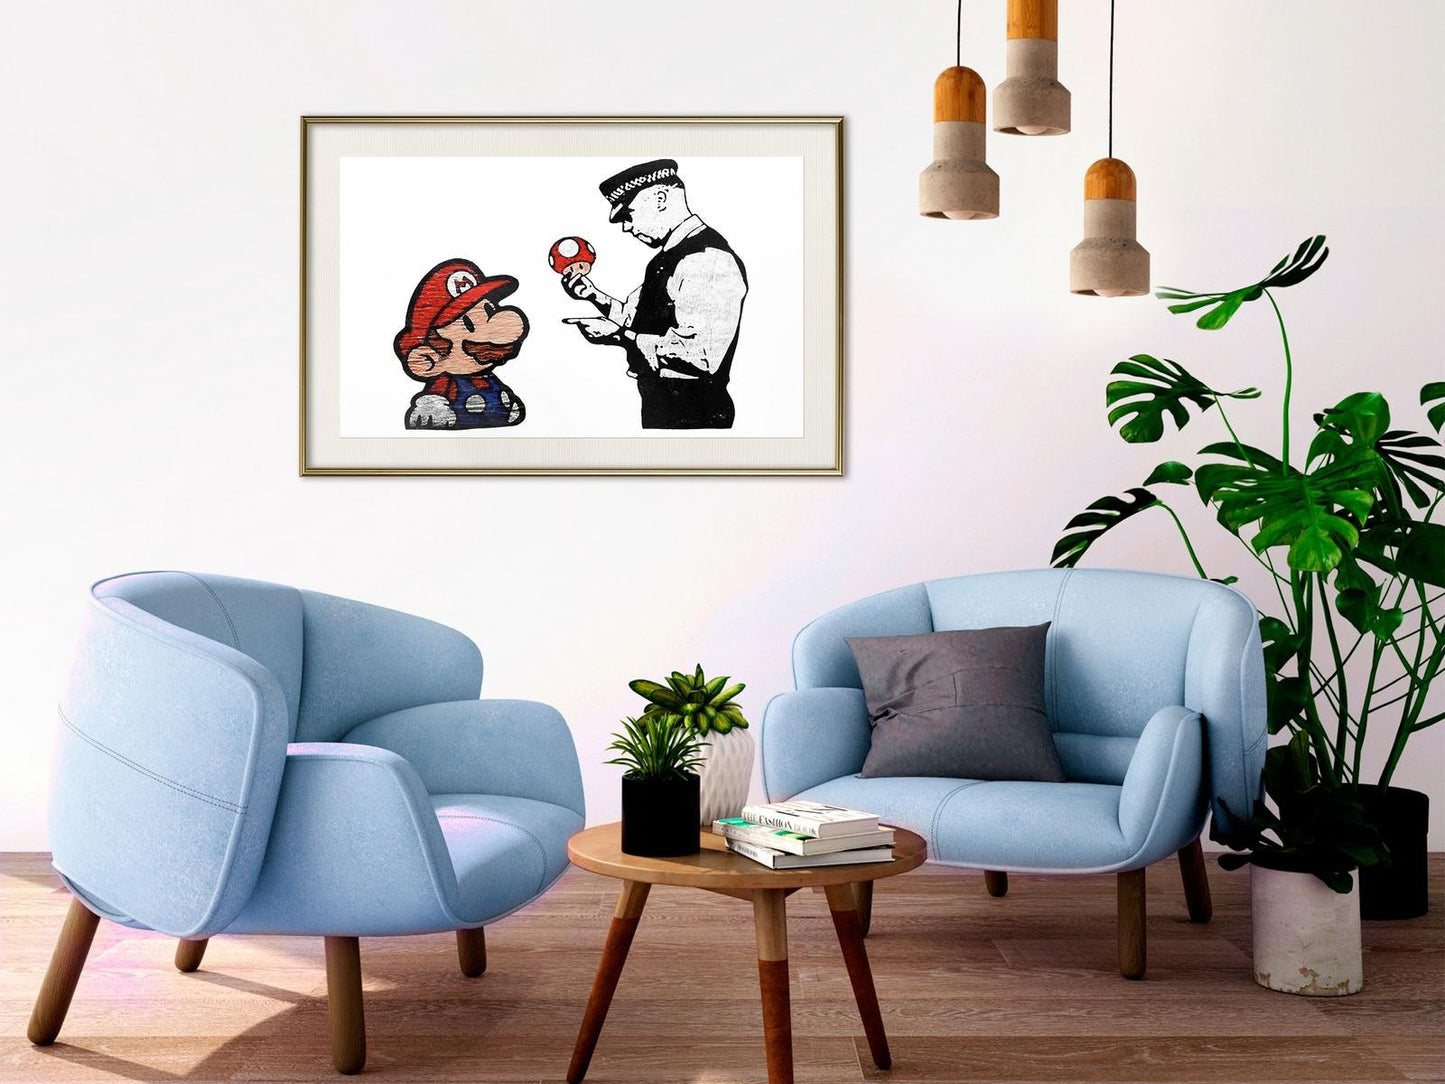 Banksy: Mario and Copper